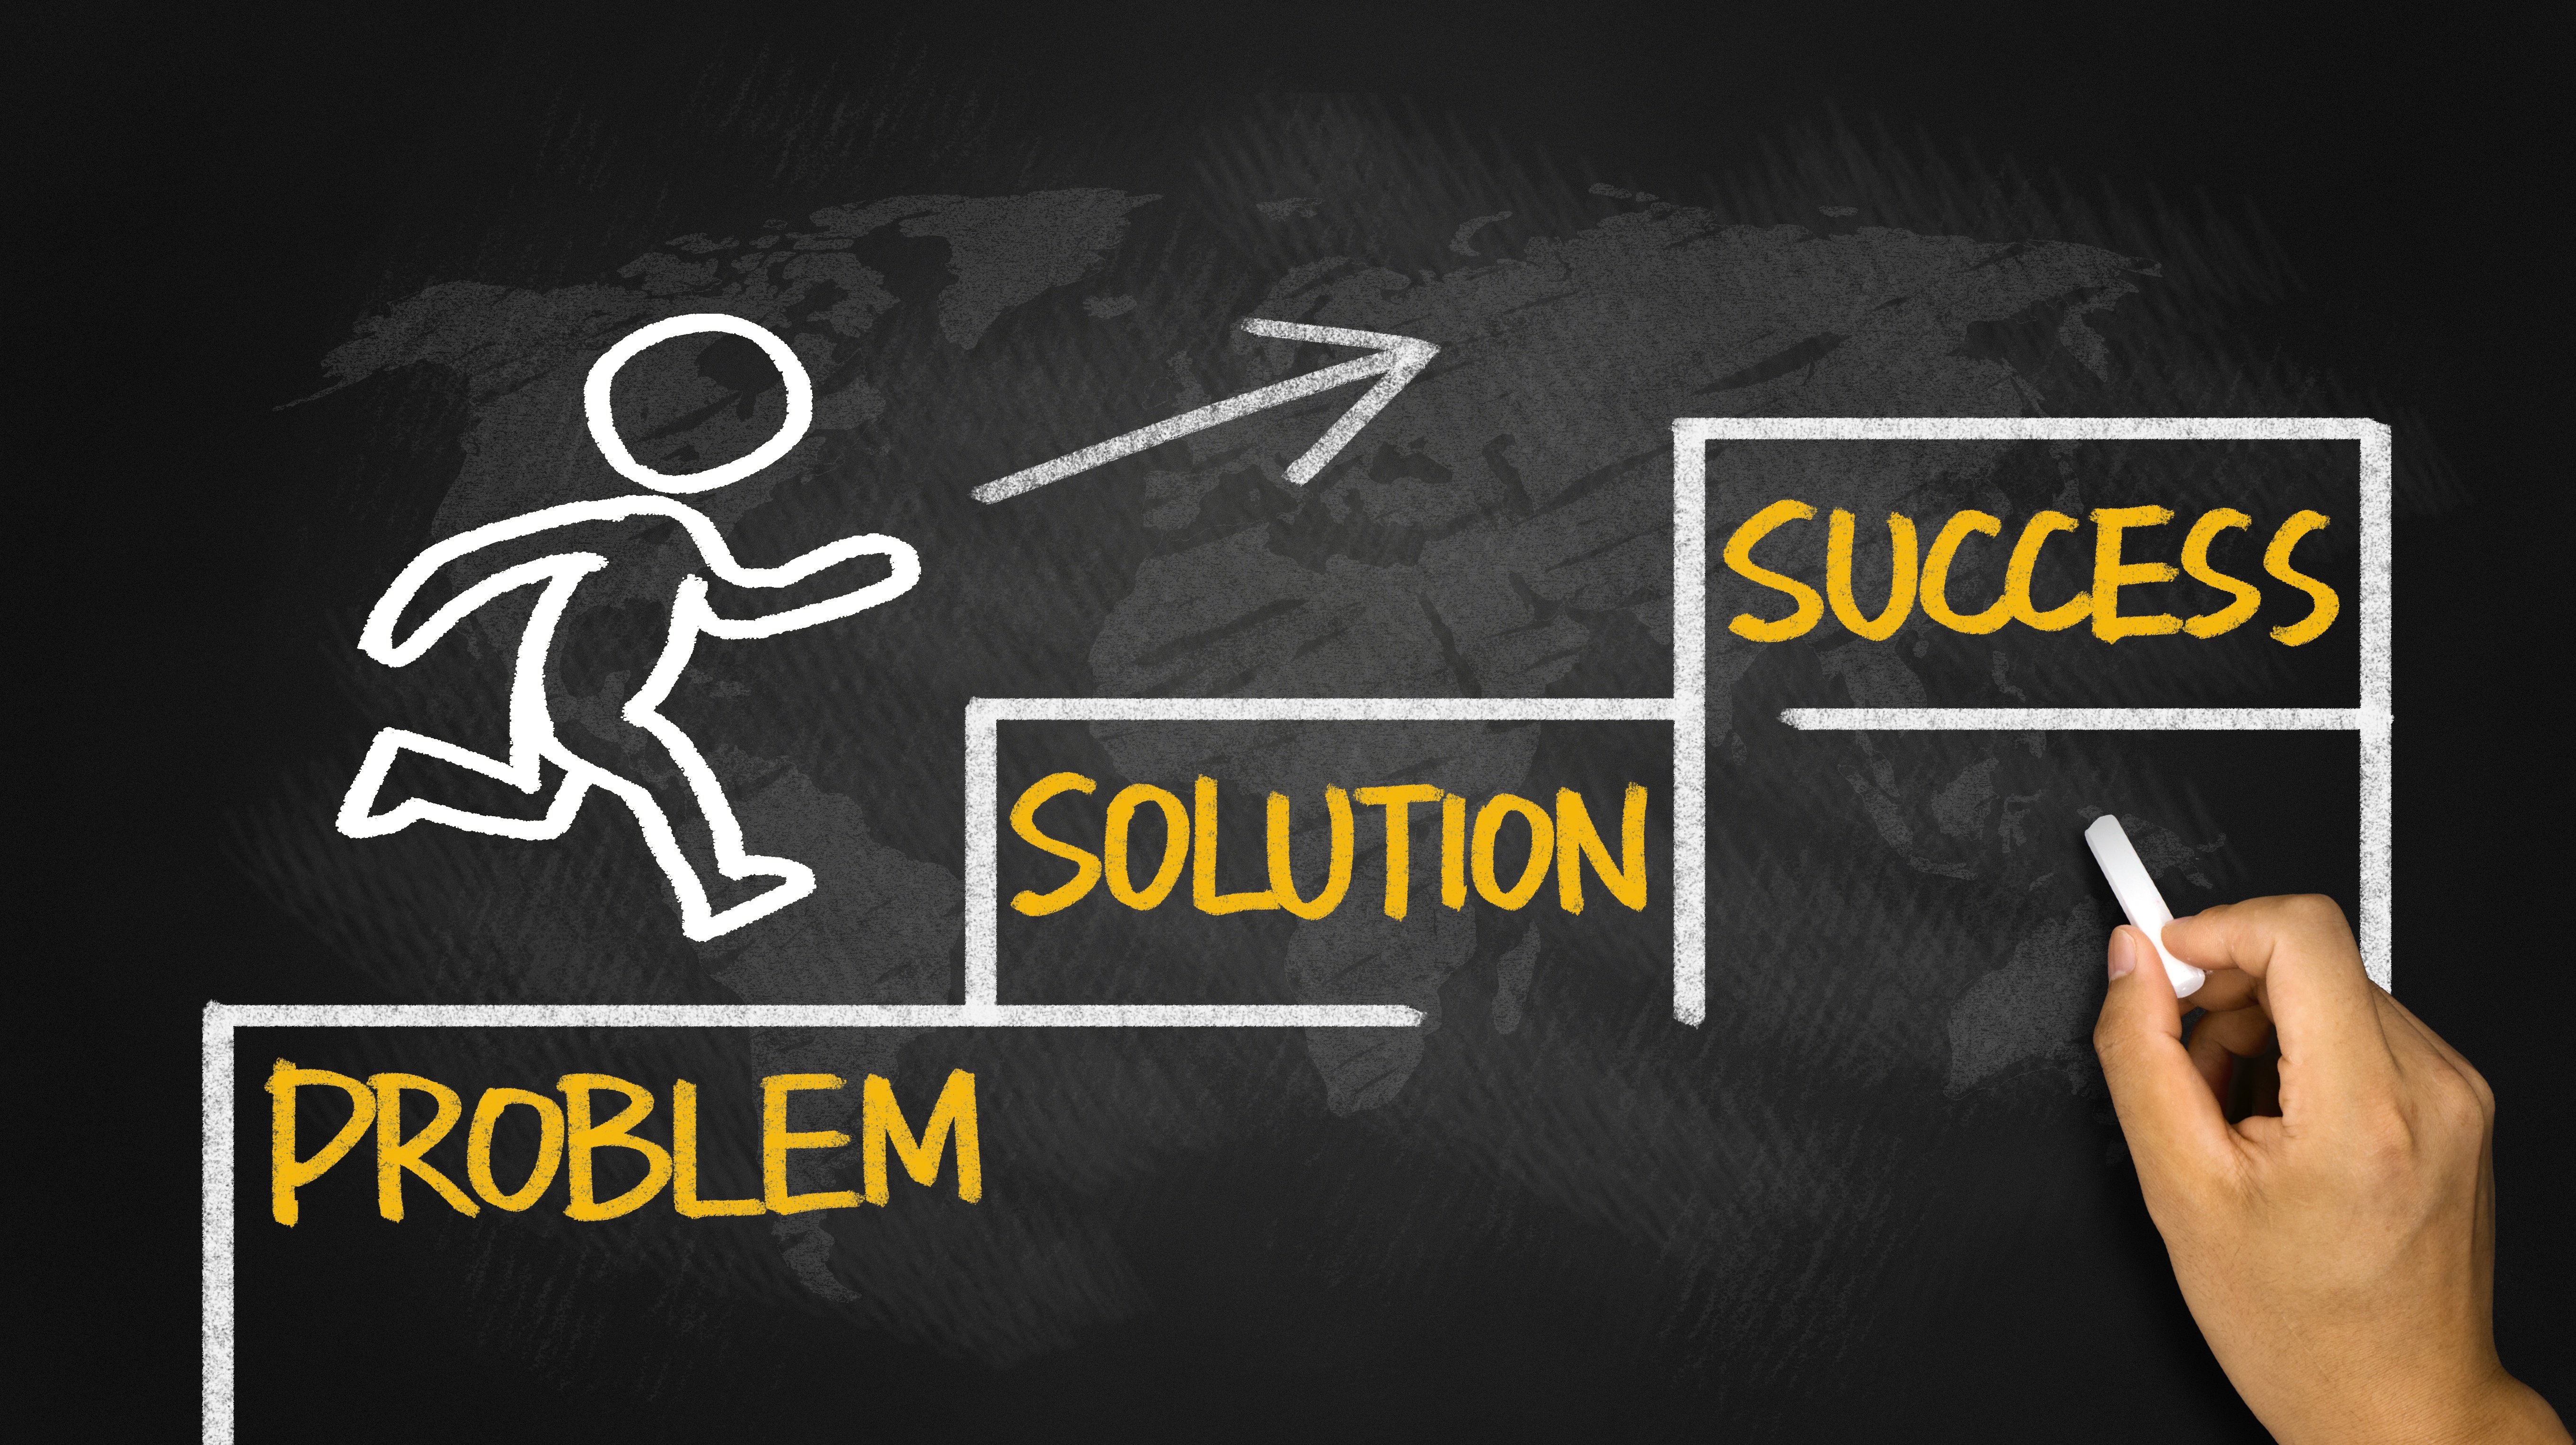 Problem solution success